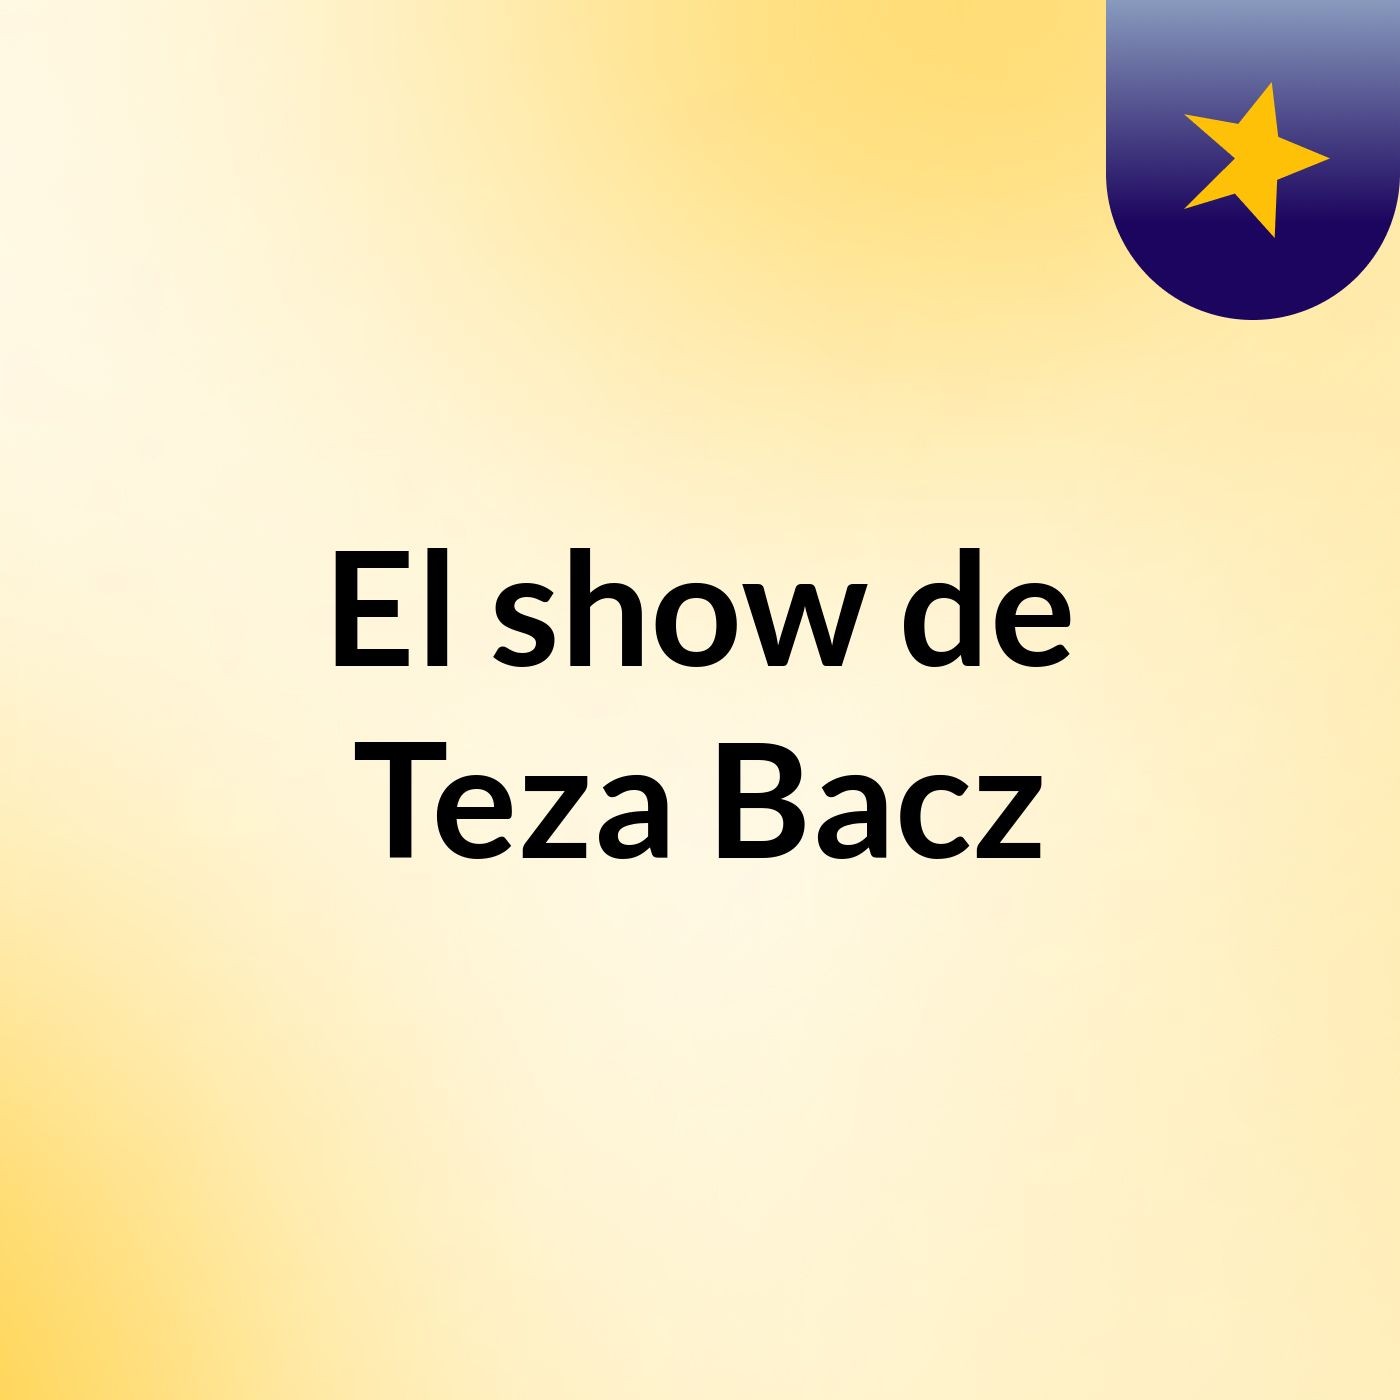 Episodio 4 - El show de Teza Bacz